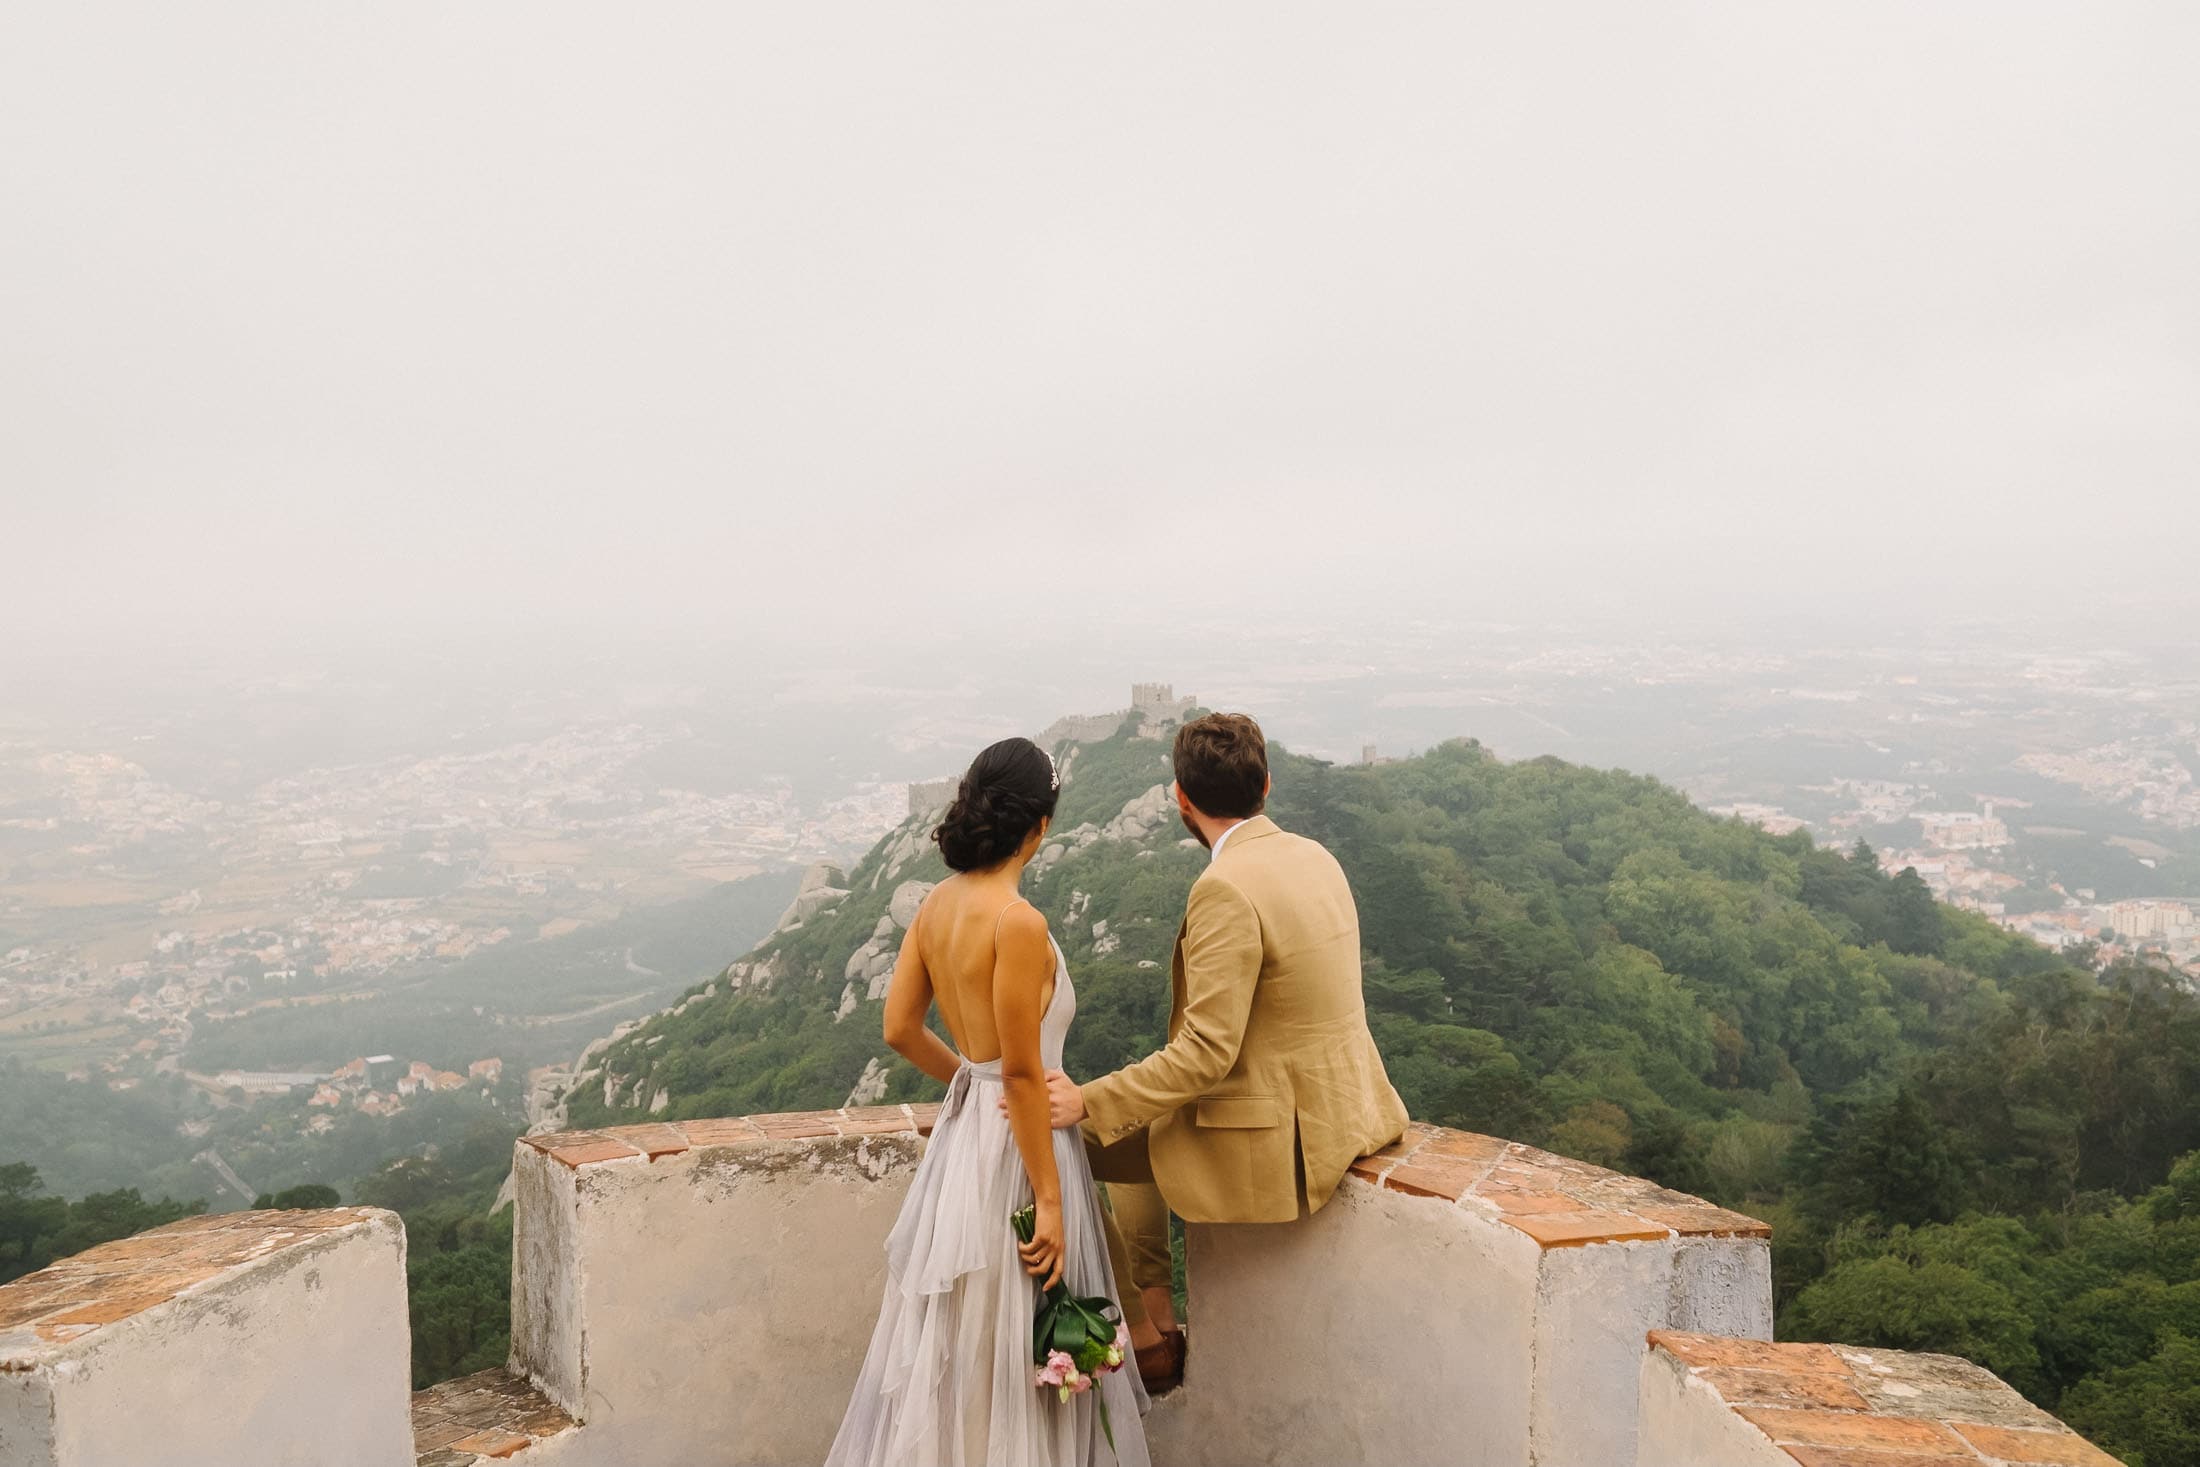 adventurous elopements in portugal #adventure #elopementadventure #sintrawedding